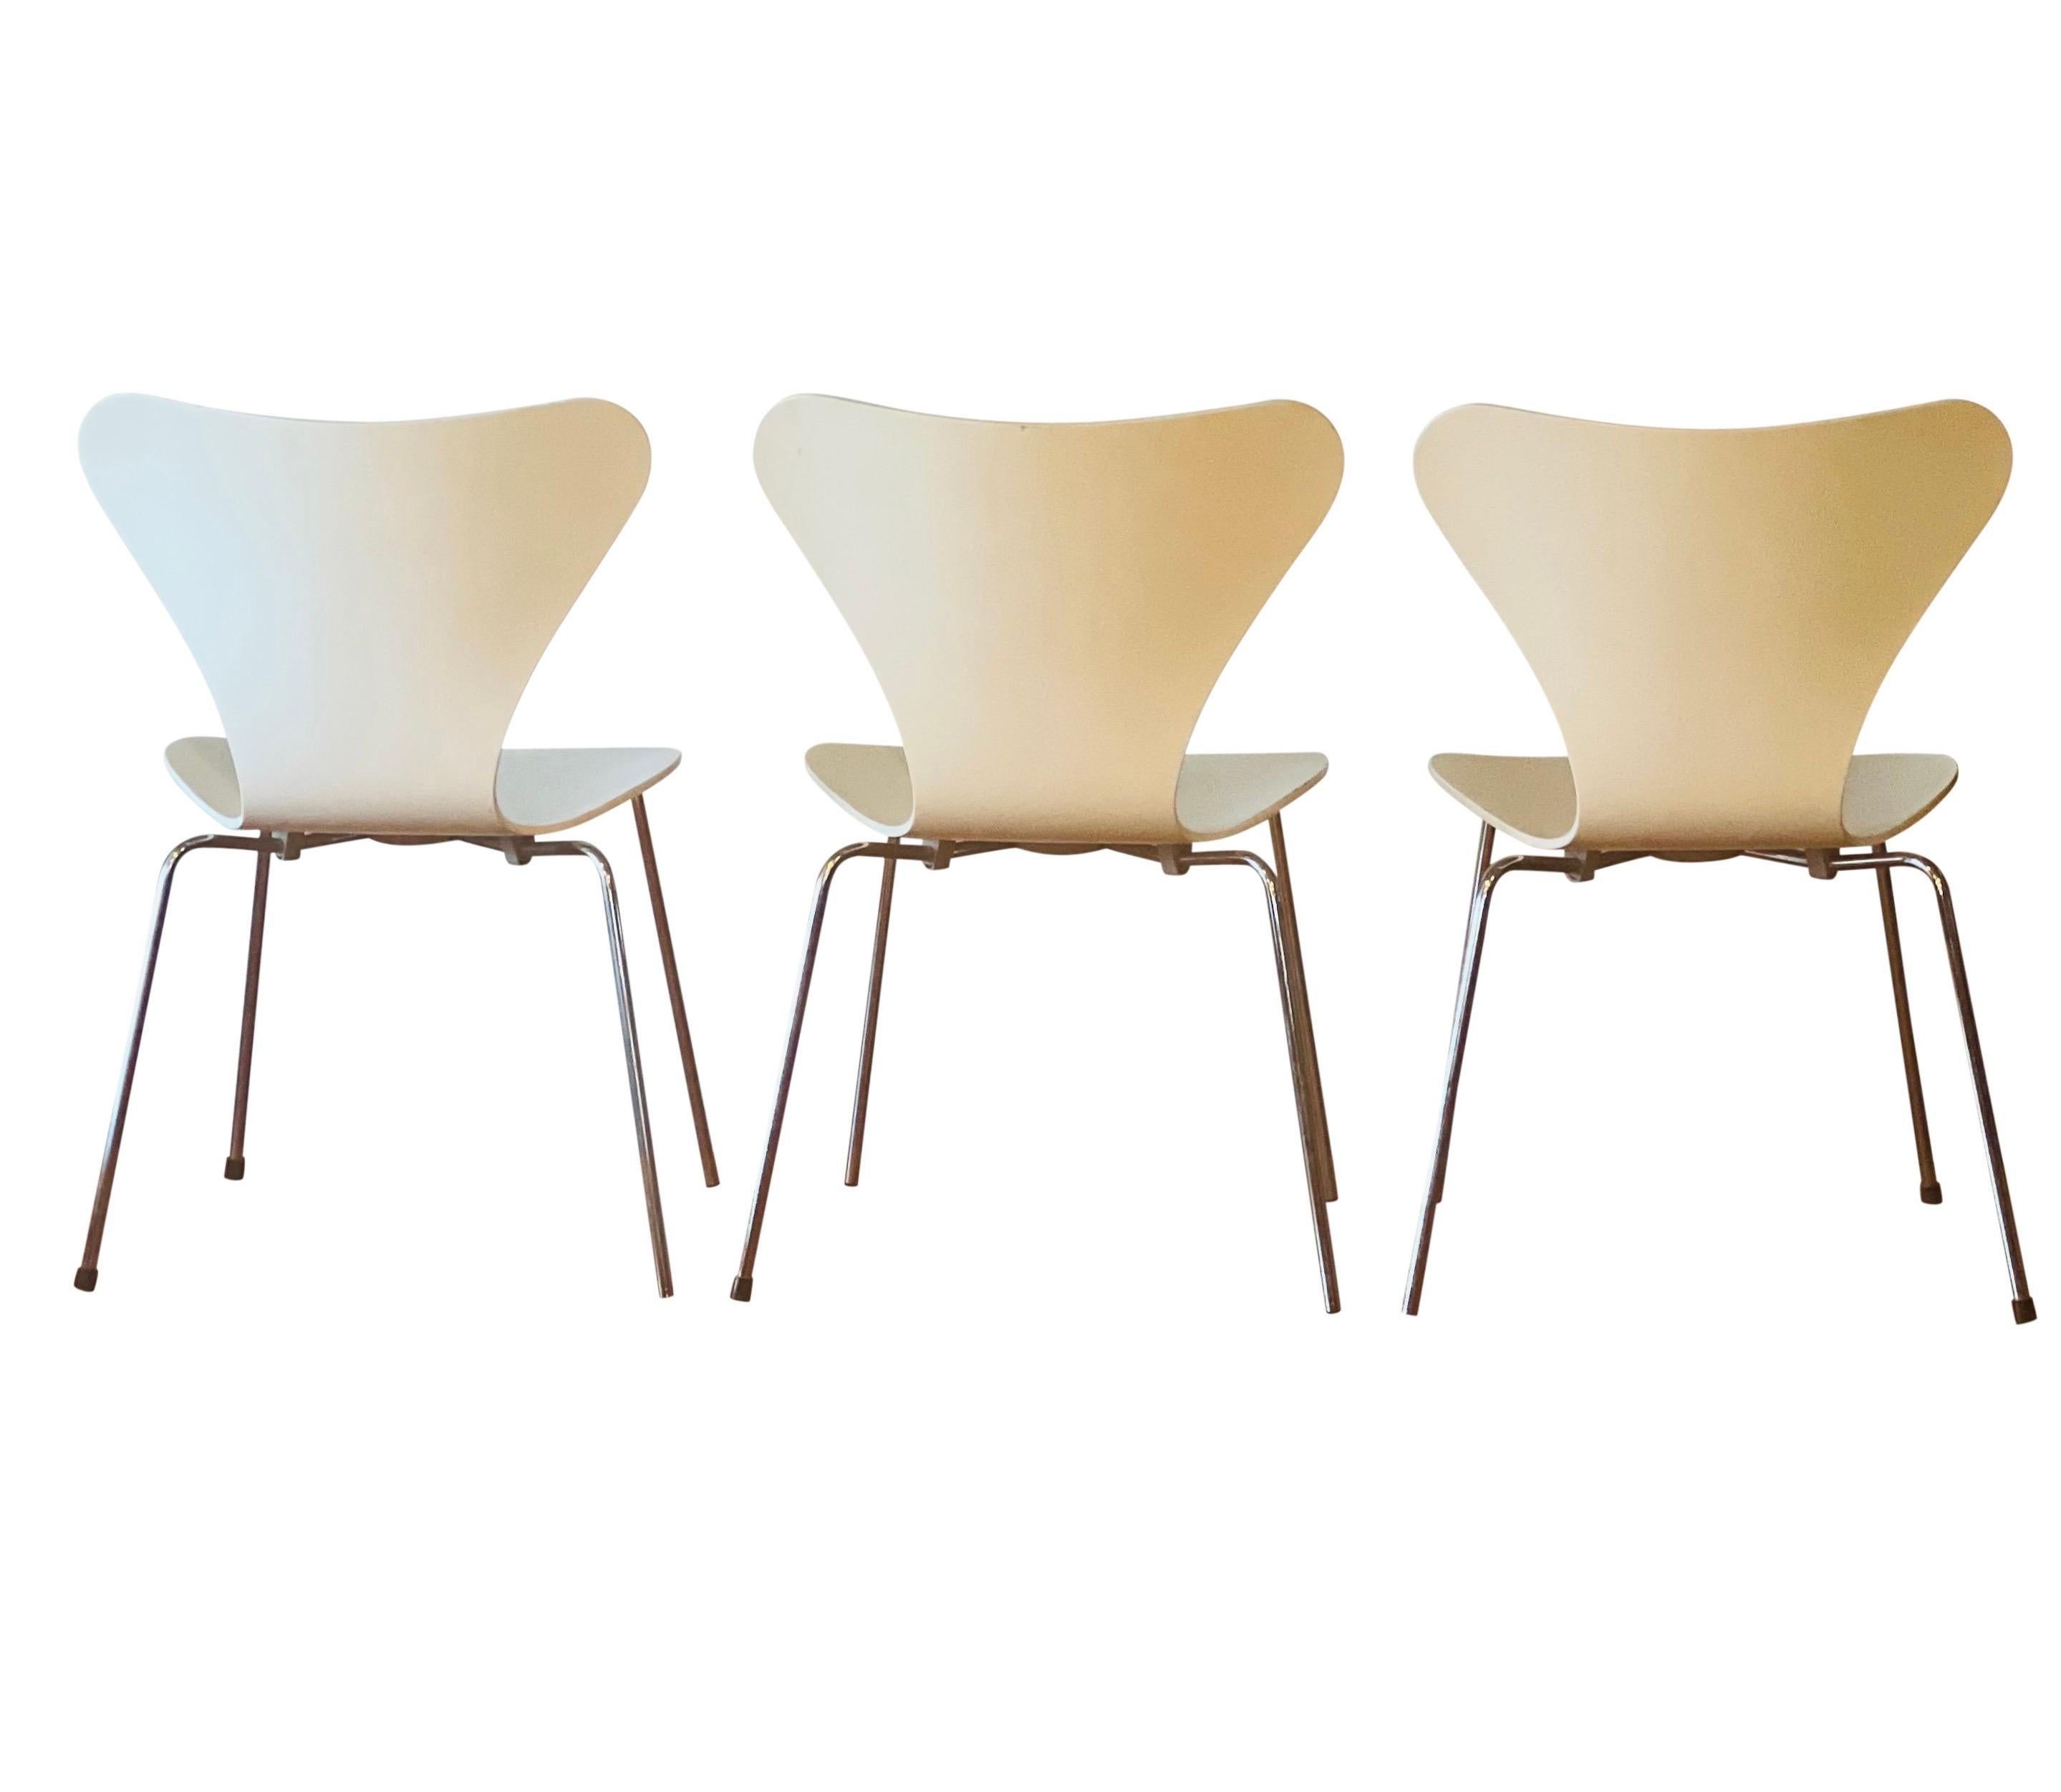 Steel Arne Jacobsen for Fritz Hansen Series 7 Chairs in White, Set of 4